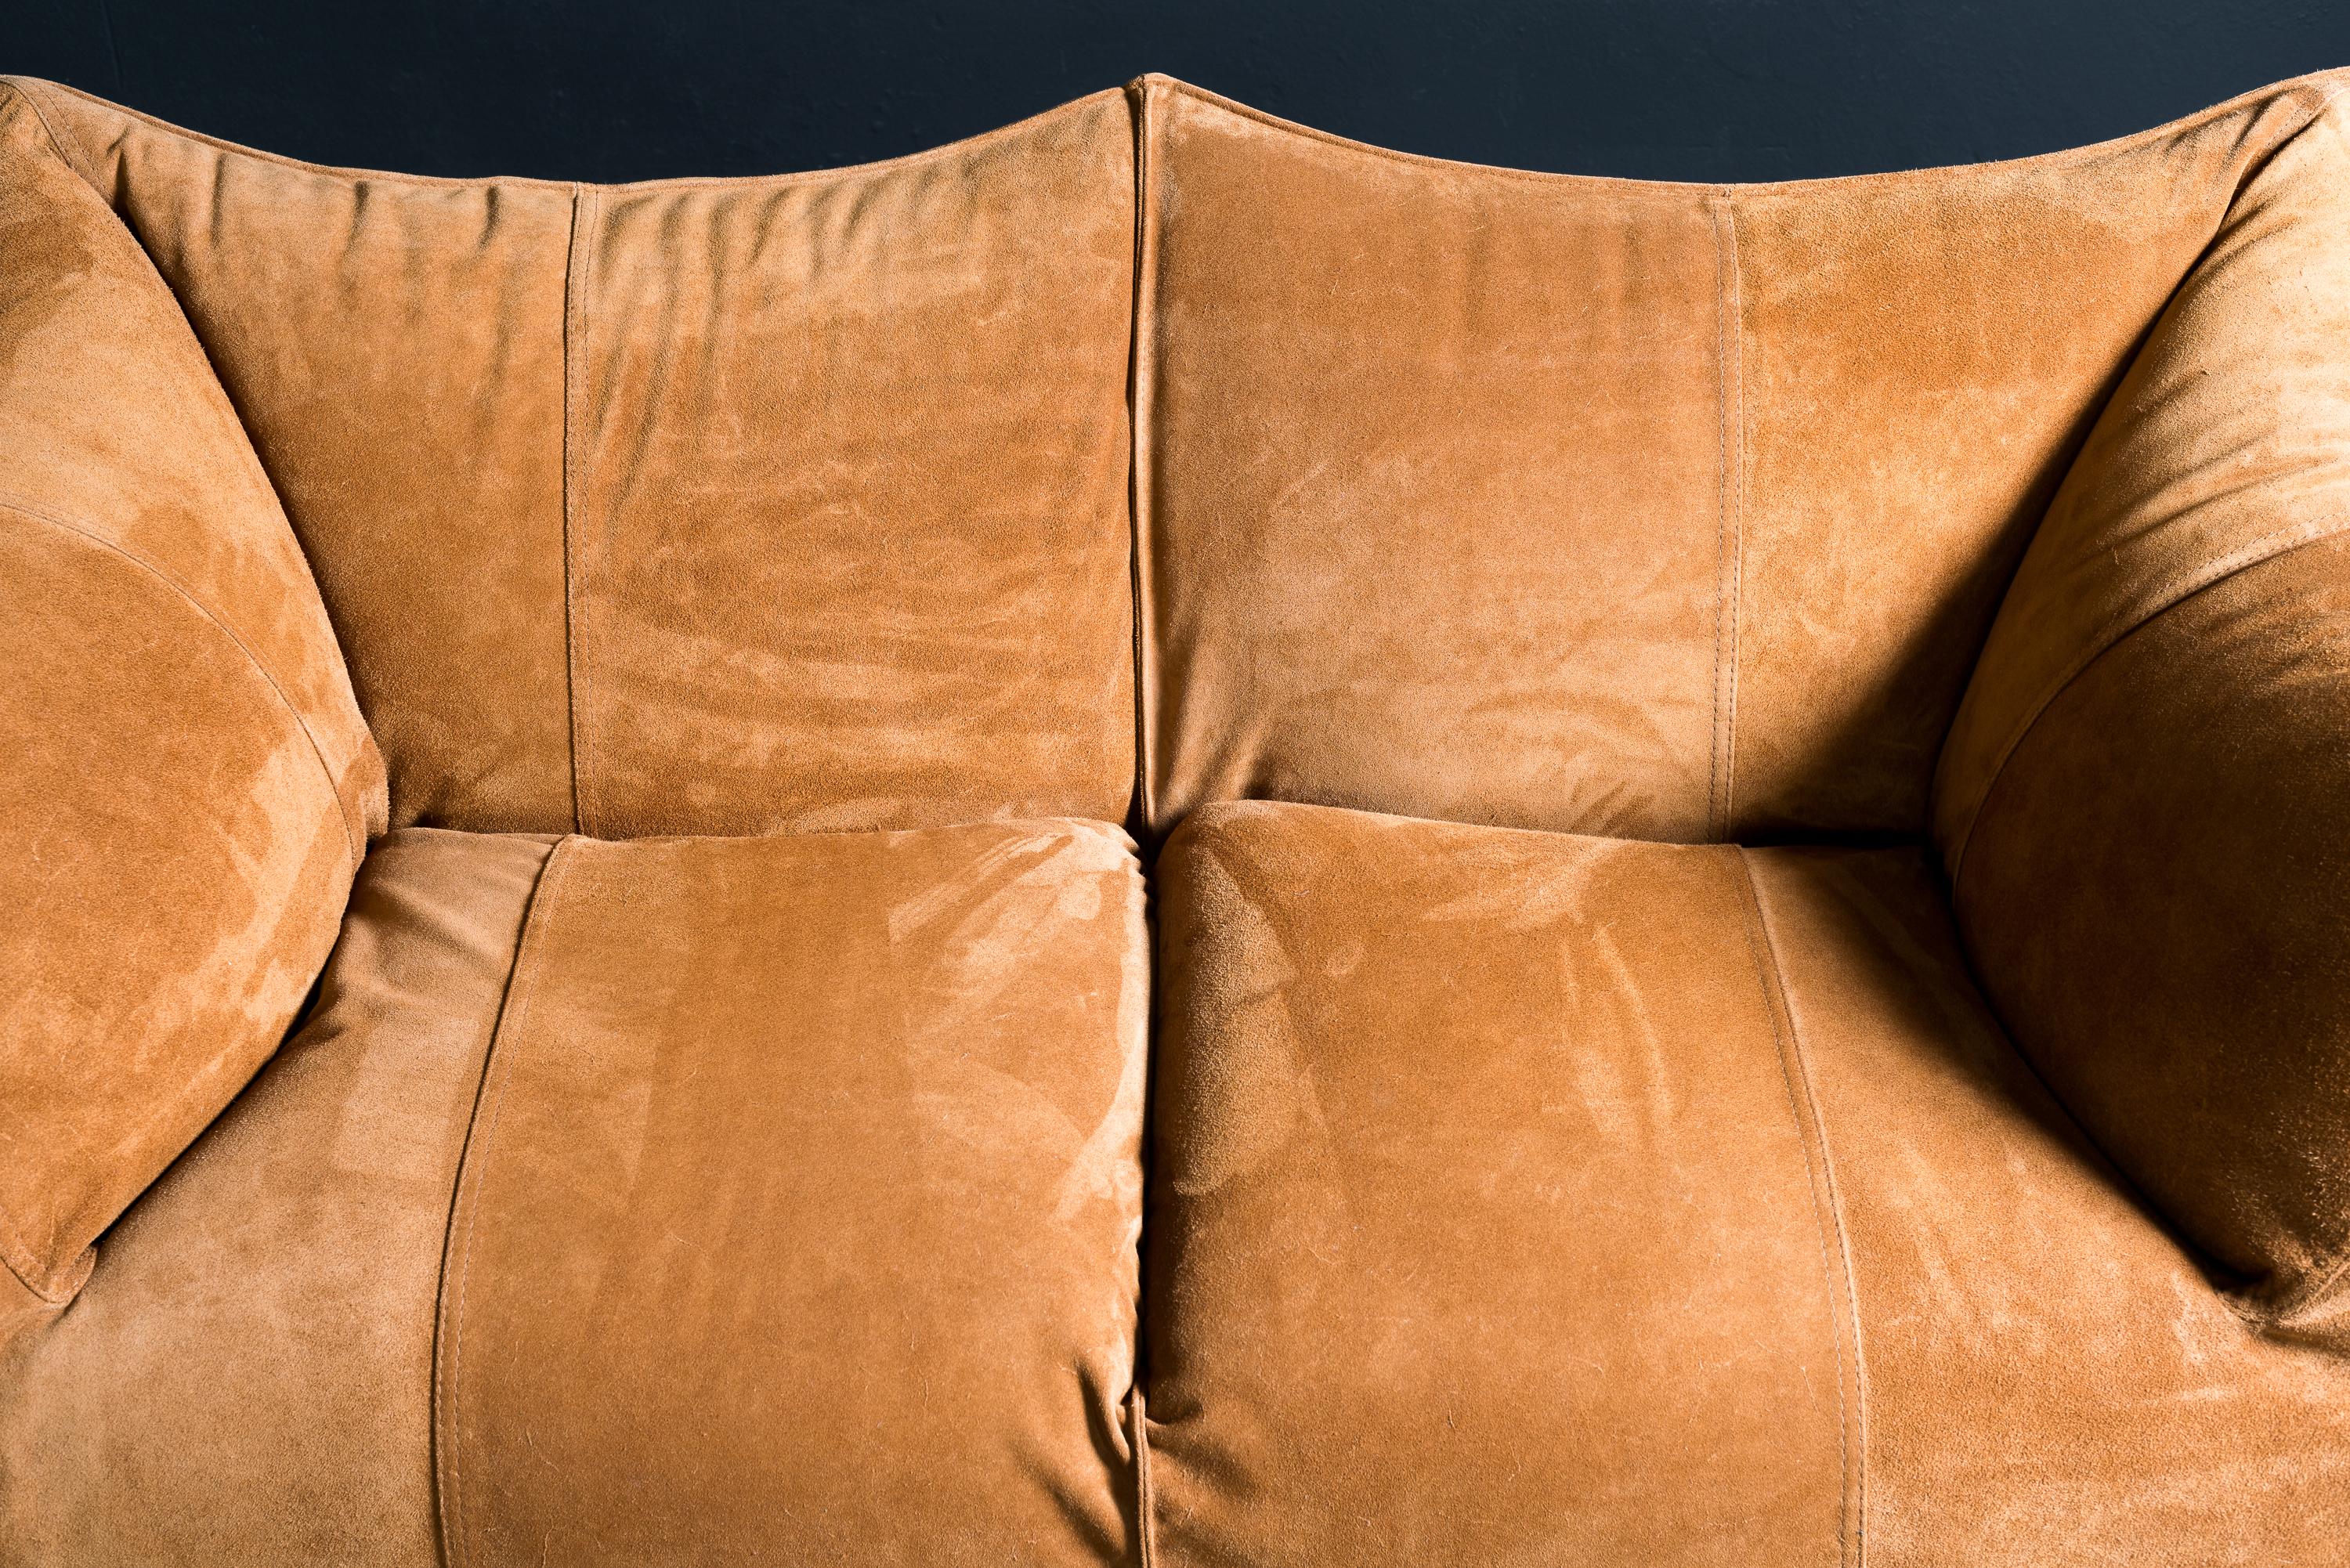 B&B Italia Le Bambole sofa in Suede Leather 1